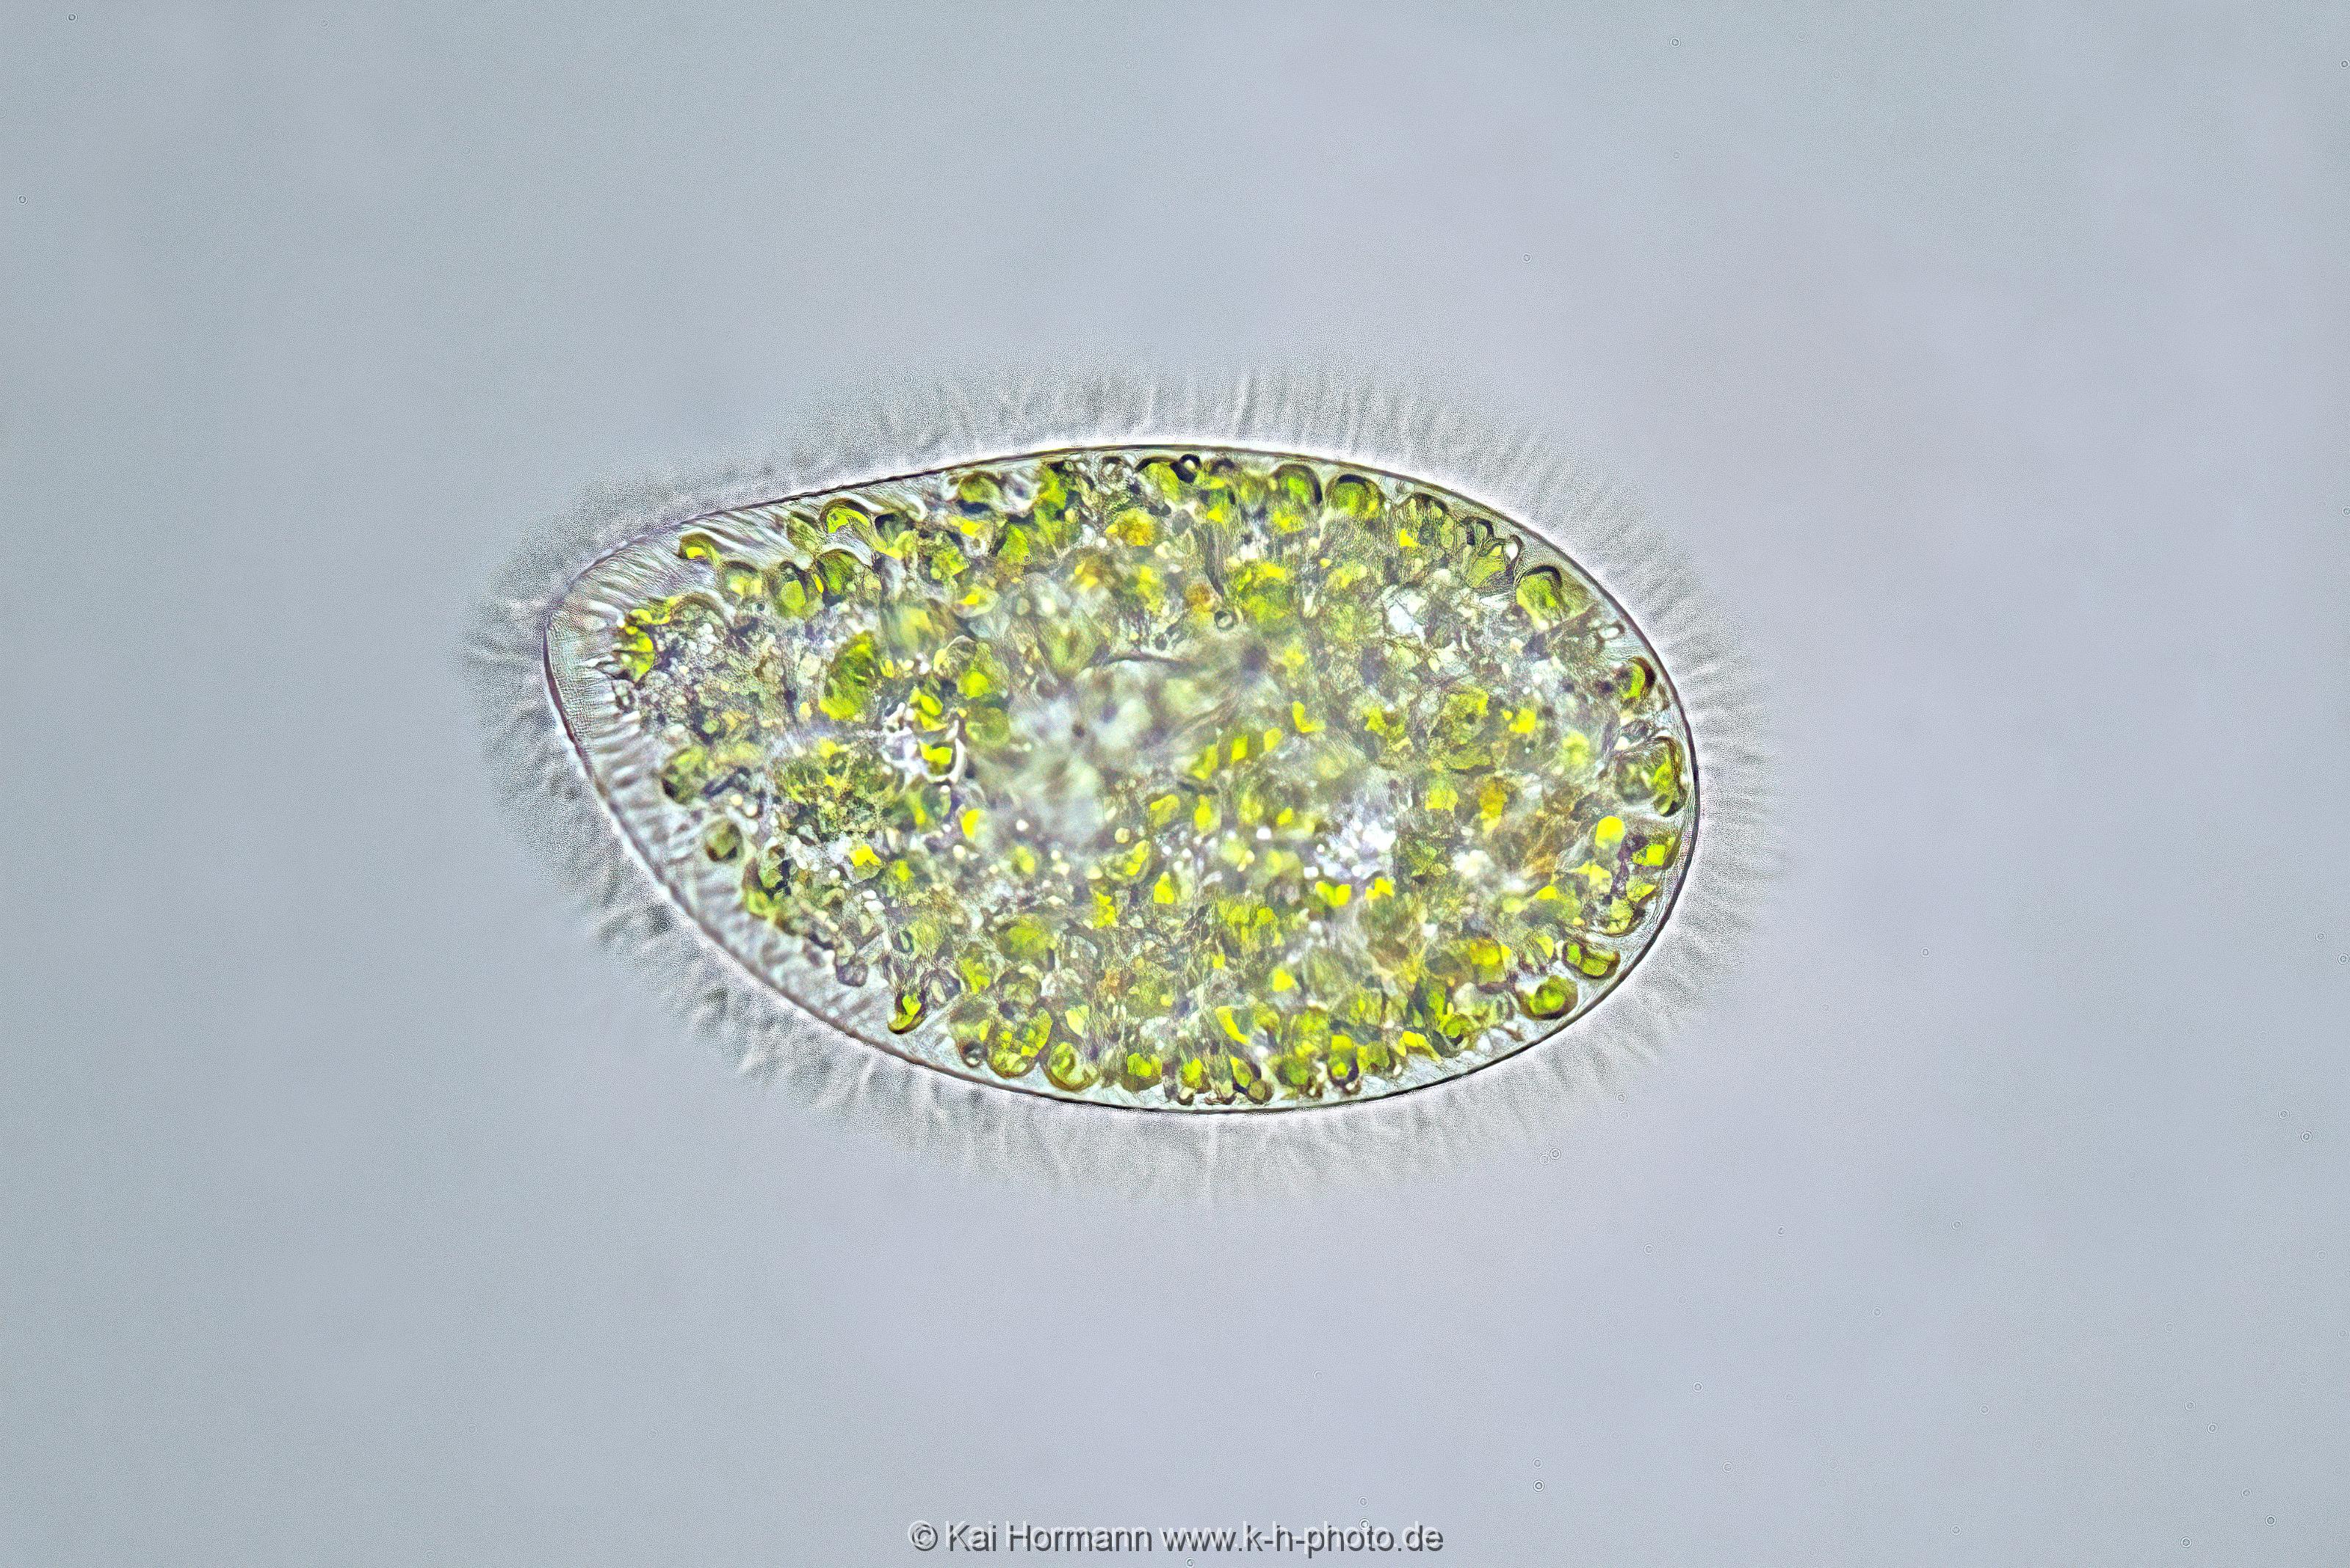 Pantoffeltierchen. Mikrofotografie: Mikroskopische Aufnahmen von Einzellern, Algen und Kleinstlebewesen.